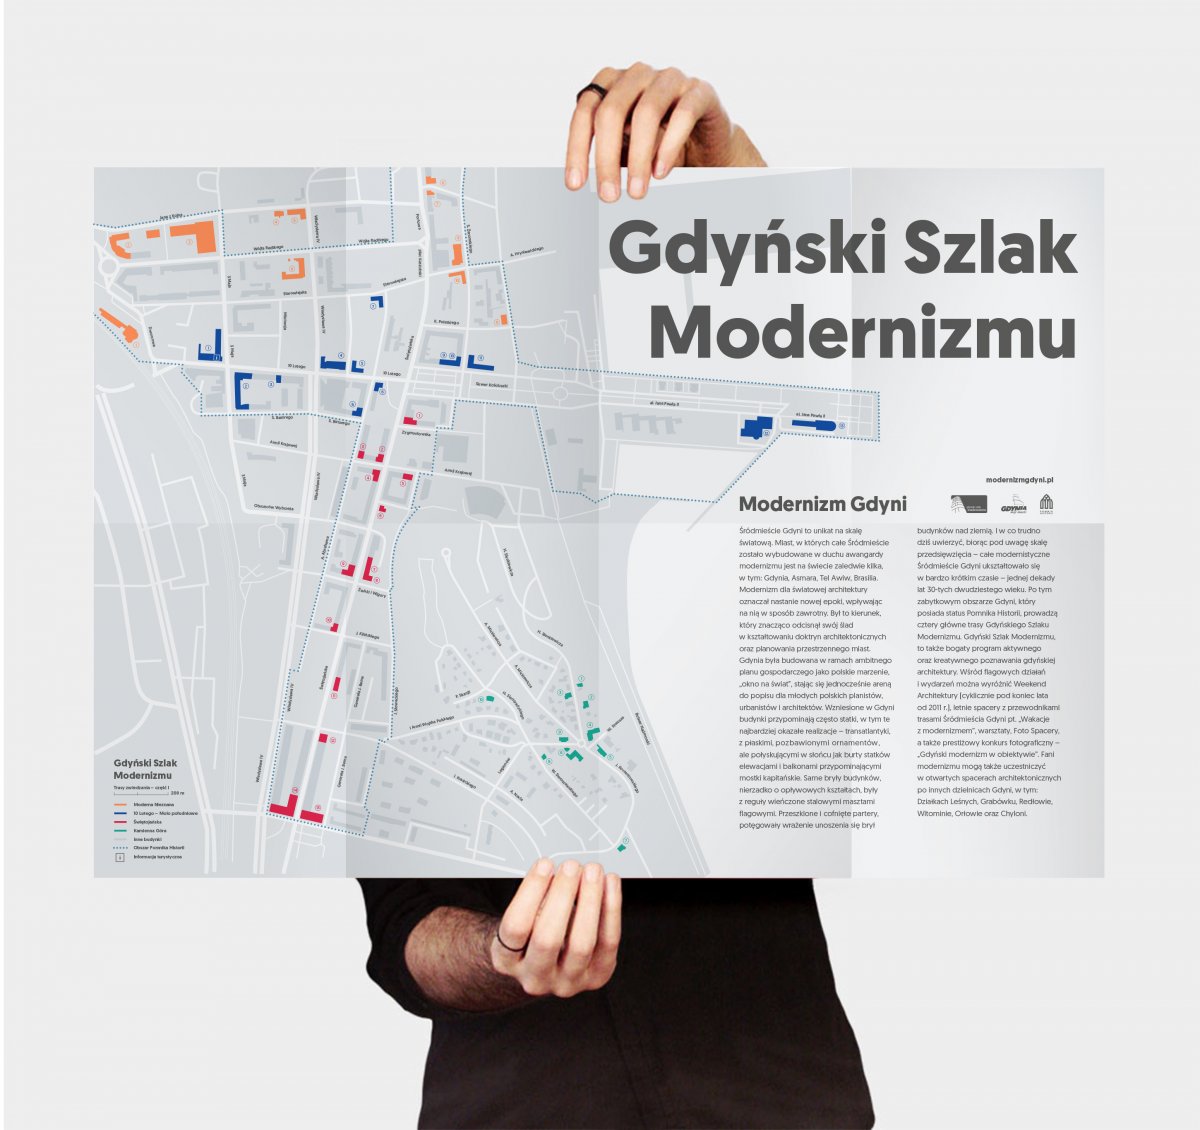 fot. materiały promocyjne Gdyńskiego Szlaku Modernizmu